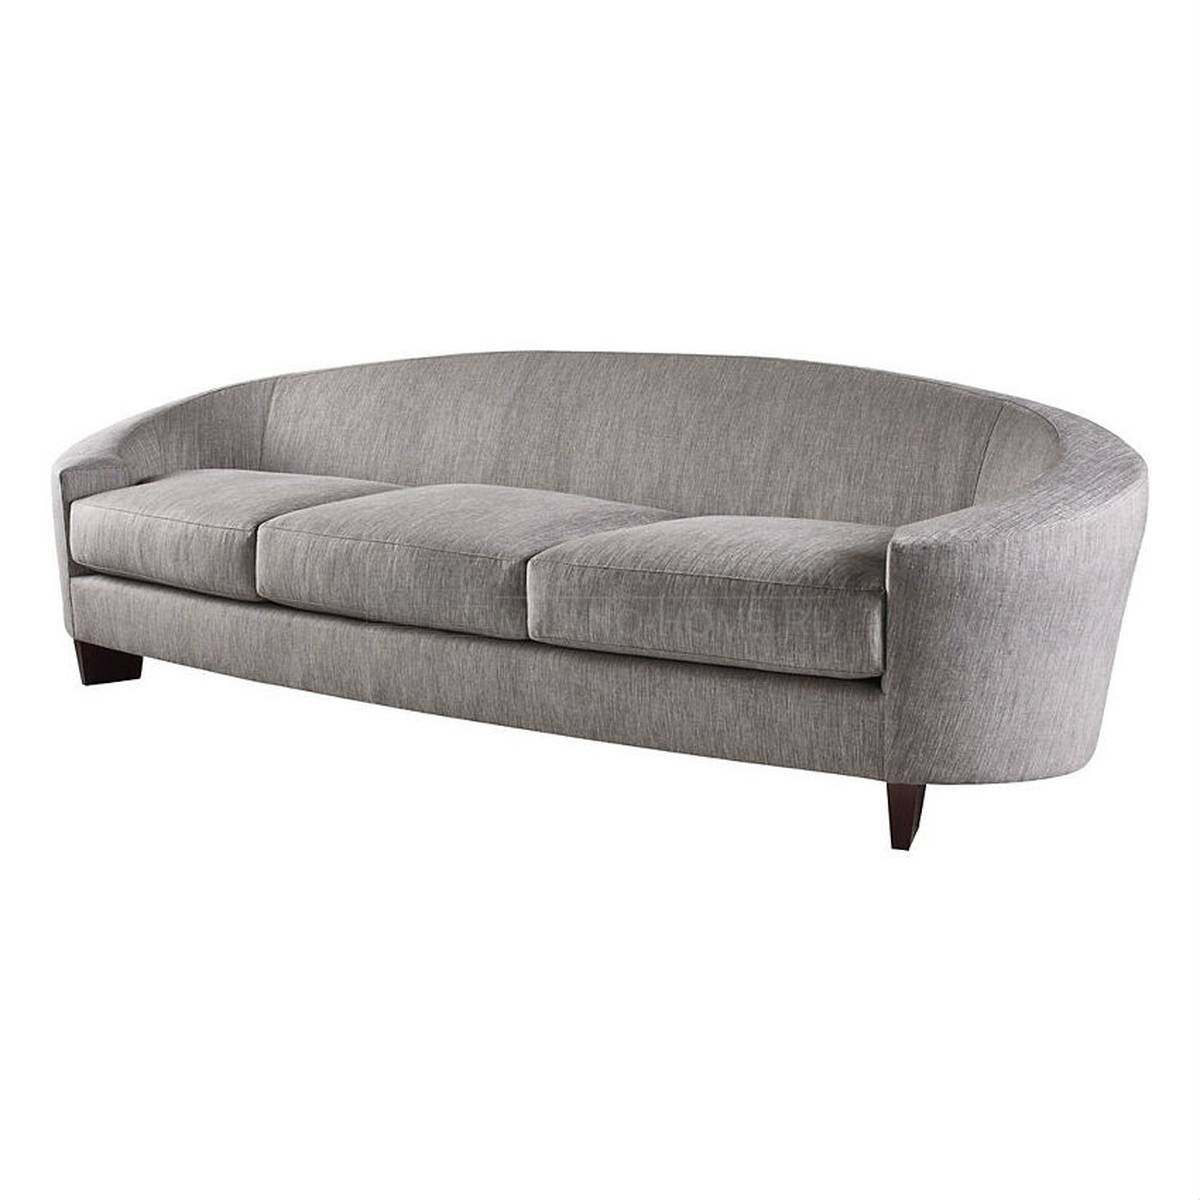 Прямой диван Ellipse sofa из США фабрики BAKER